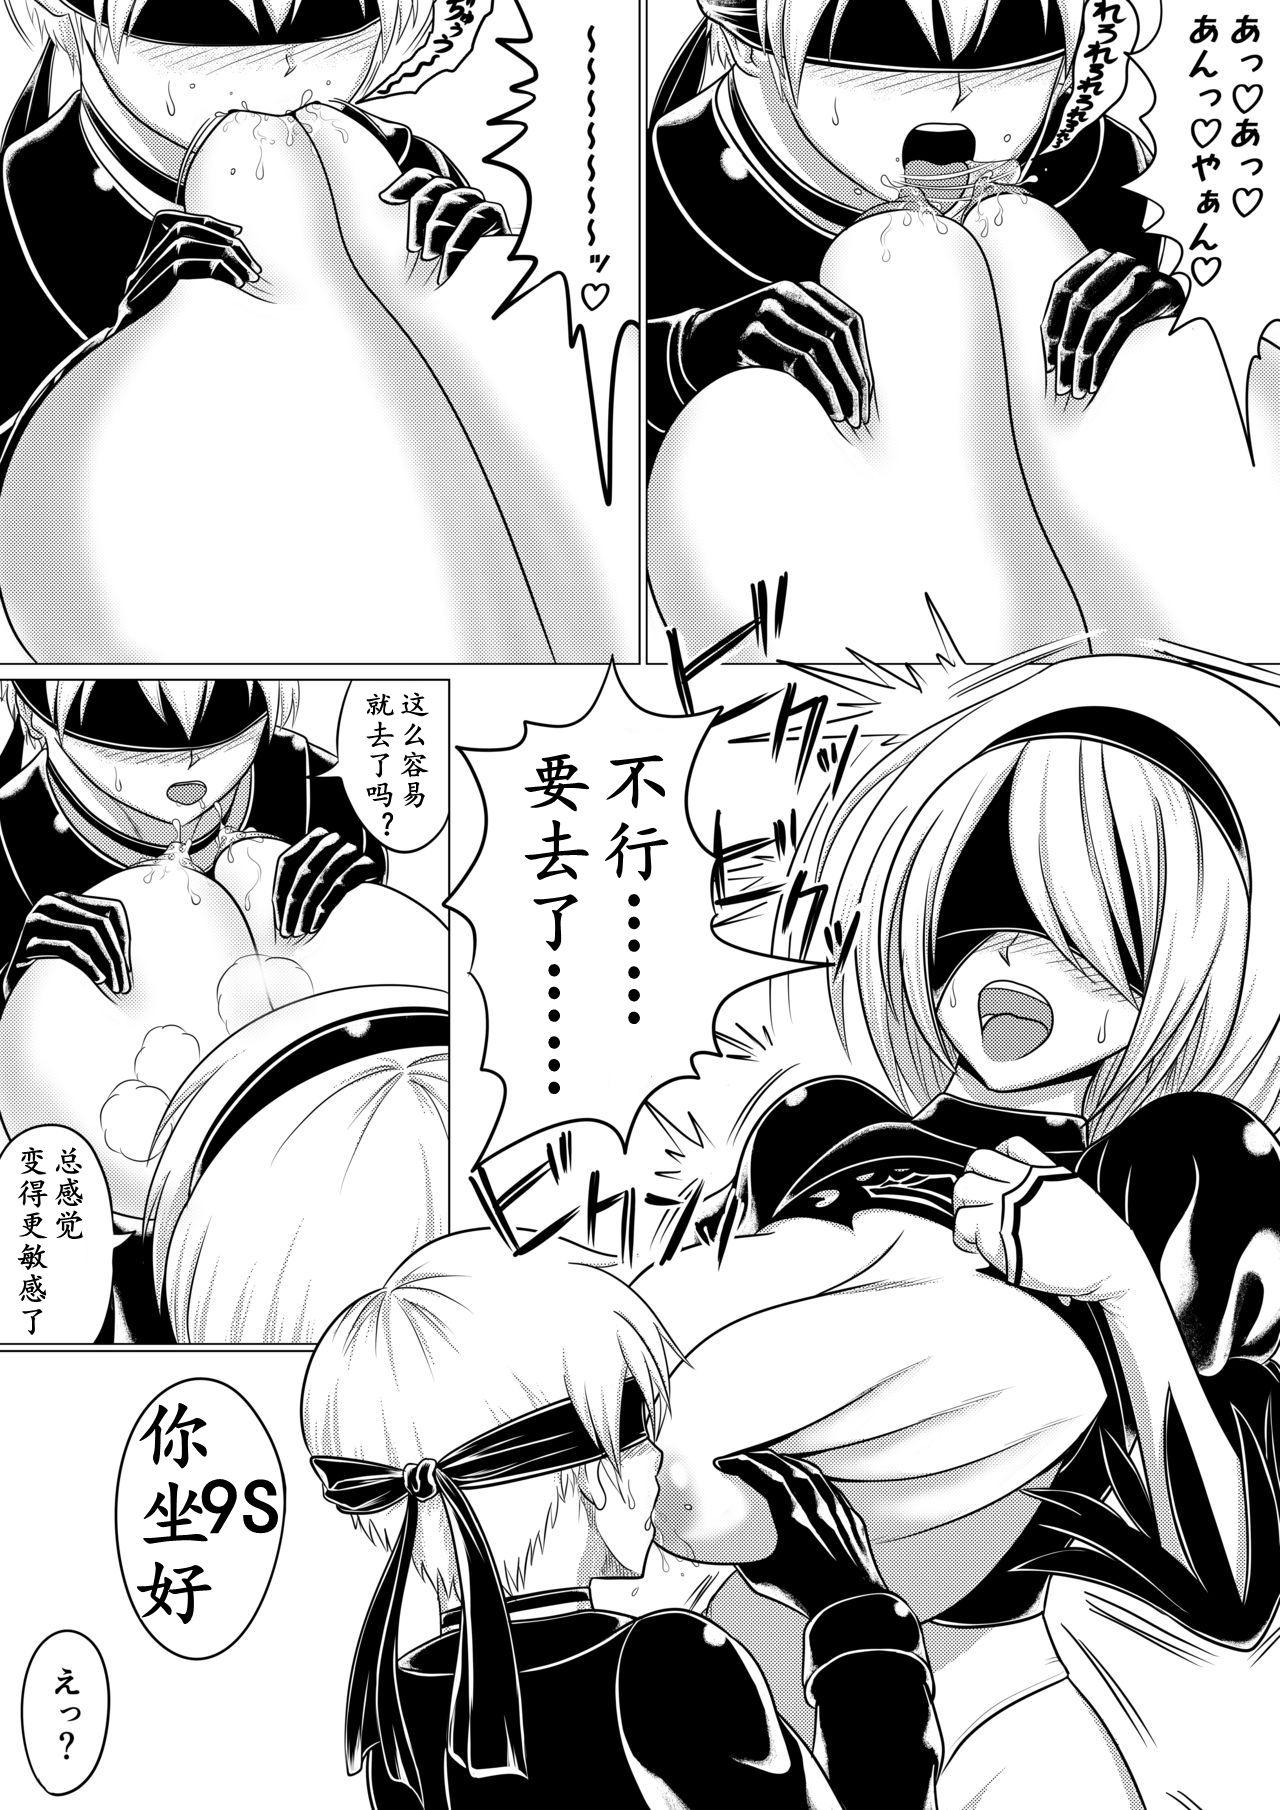 Ball Sucking Automata Manga Oppai Hen - Nier automata Piroca - Page 4